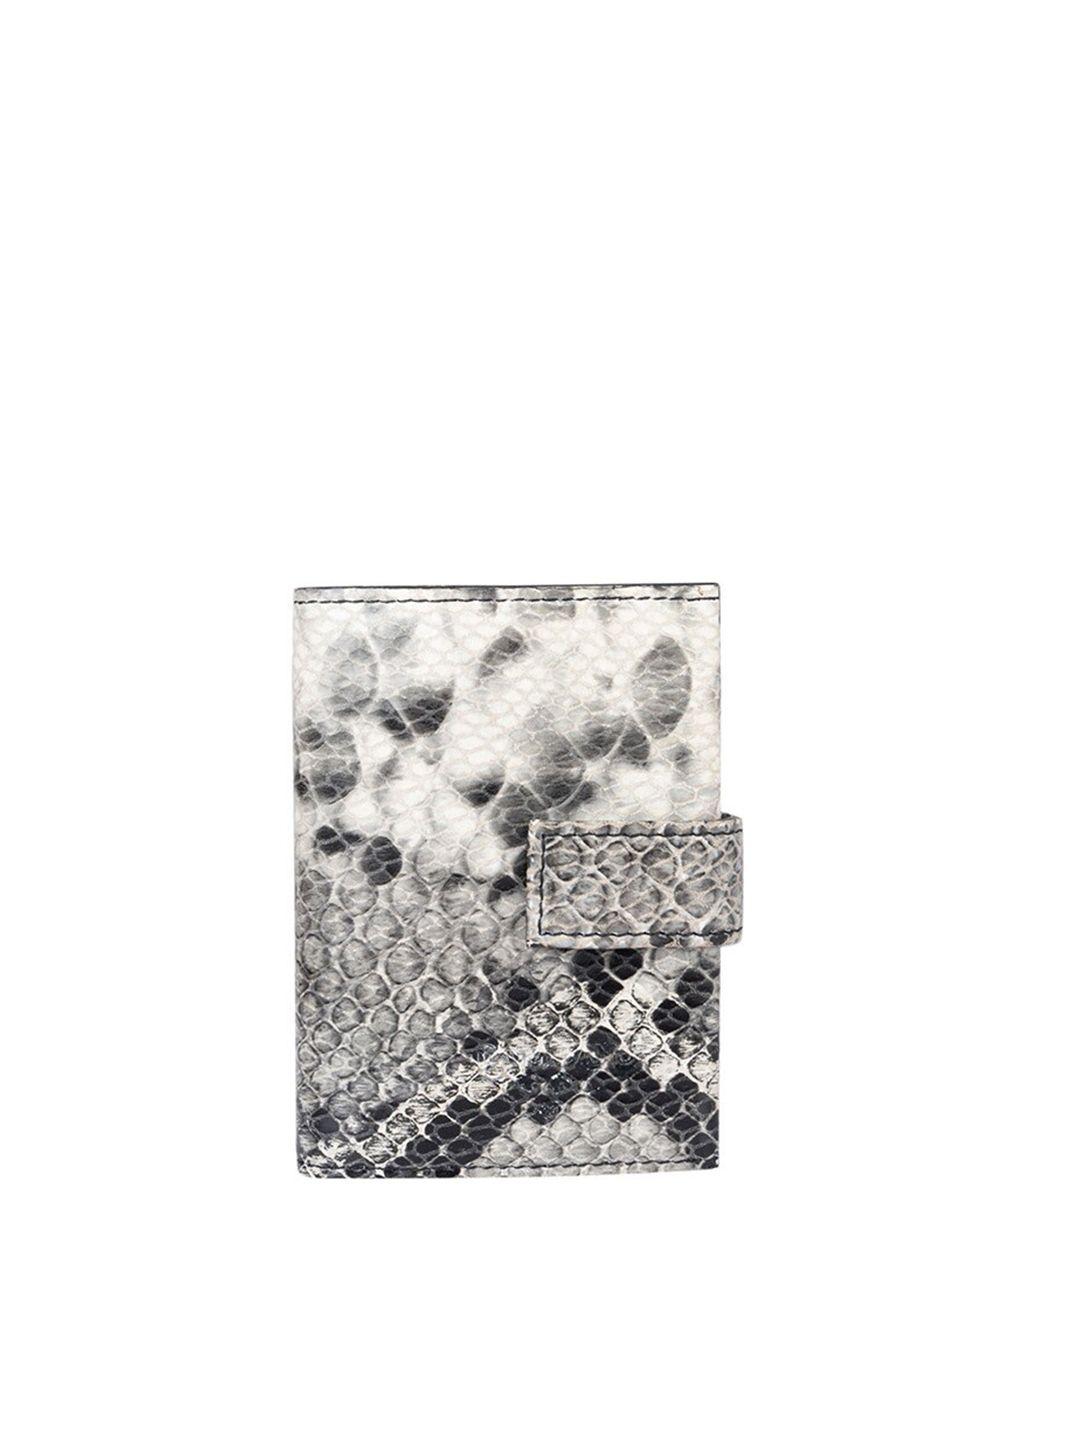 da milano women off white & grey animal textured leather three fold wallet